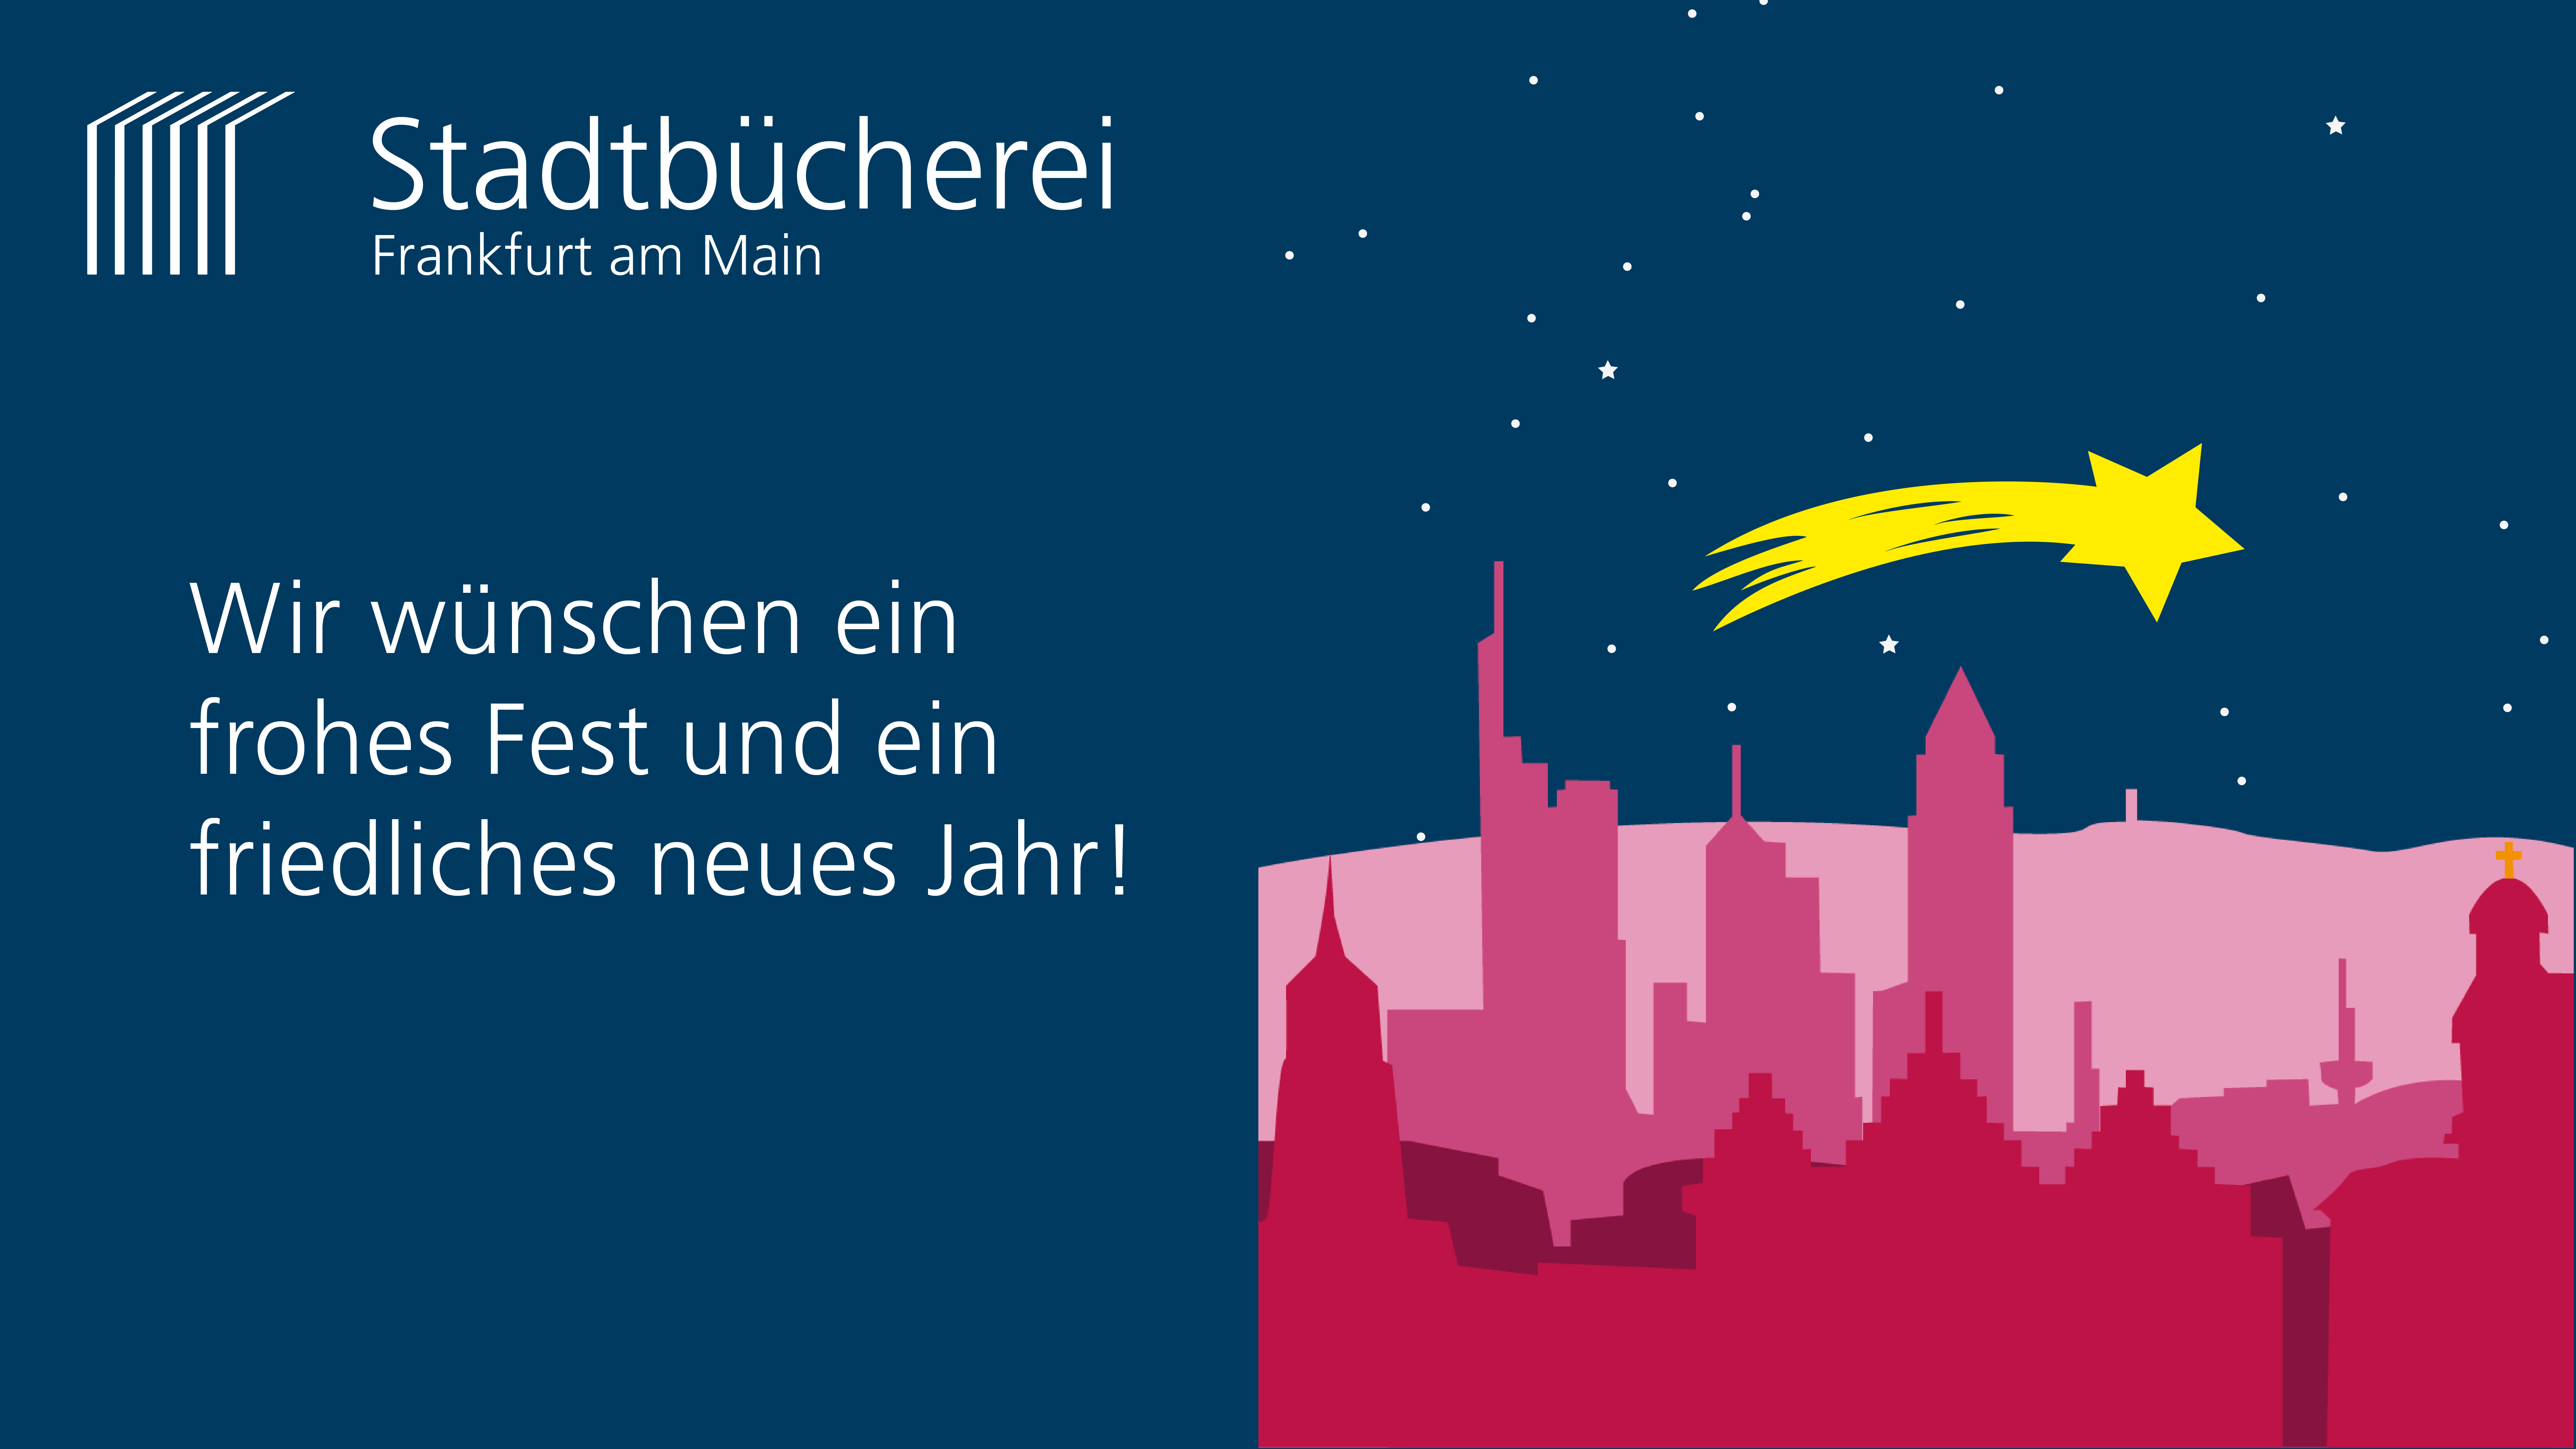 Illustration der Frankfurter Skyline mit einer Sternschnuppe. Daneben der Text "Wir wünschen ein frohes Fest und ein friedliches neues Jahr!".